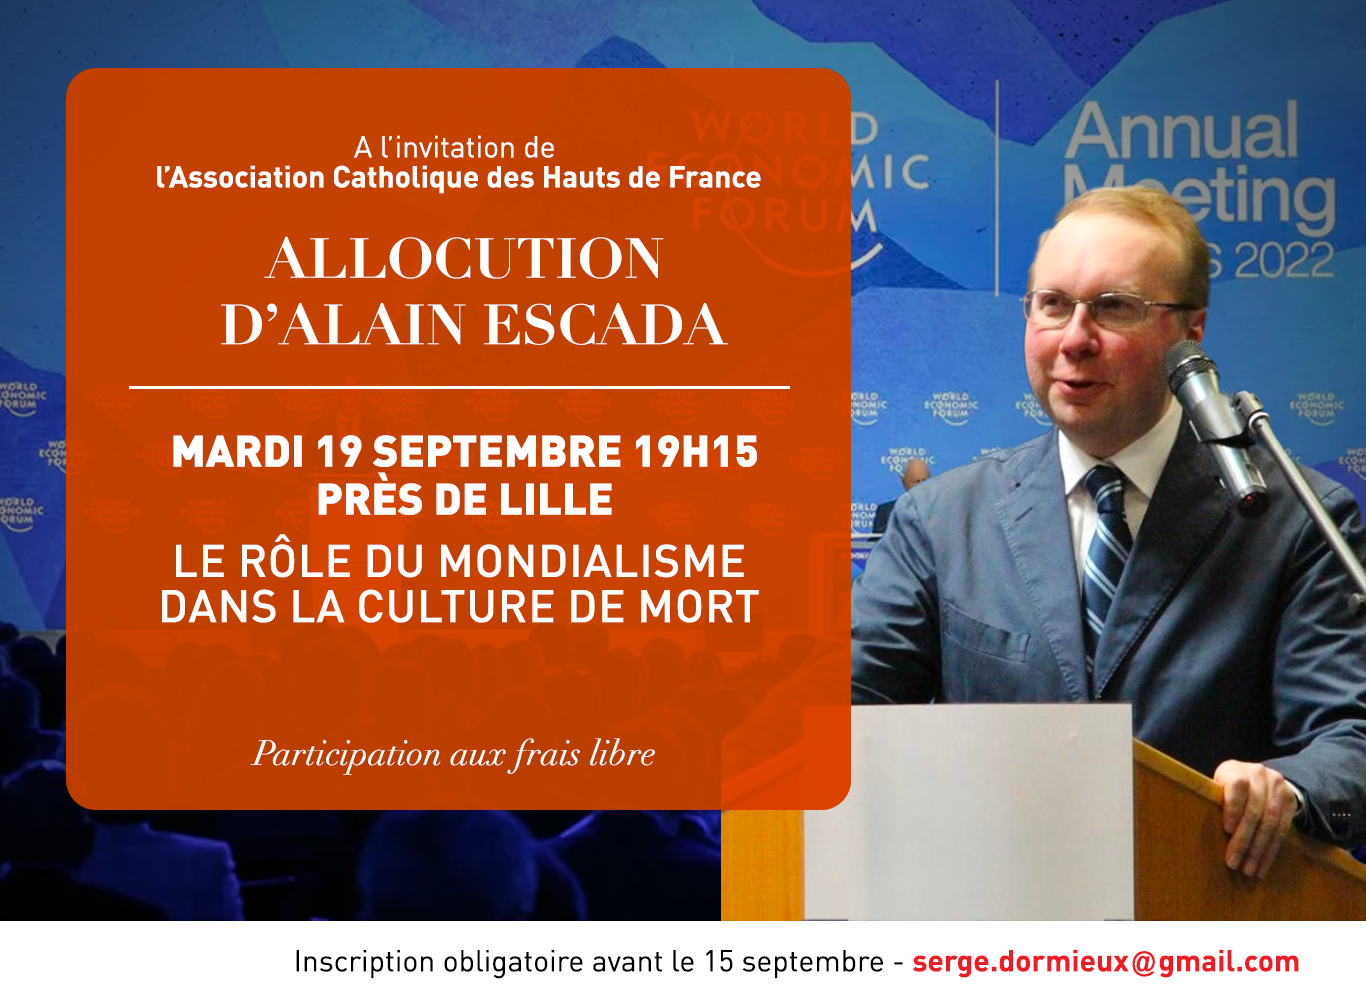 Le rôle du mondialisme dans la culture de mort, conférence d'Alain Escada à Lille